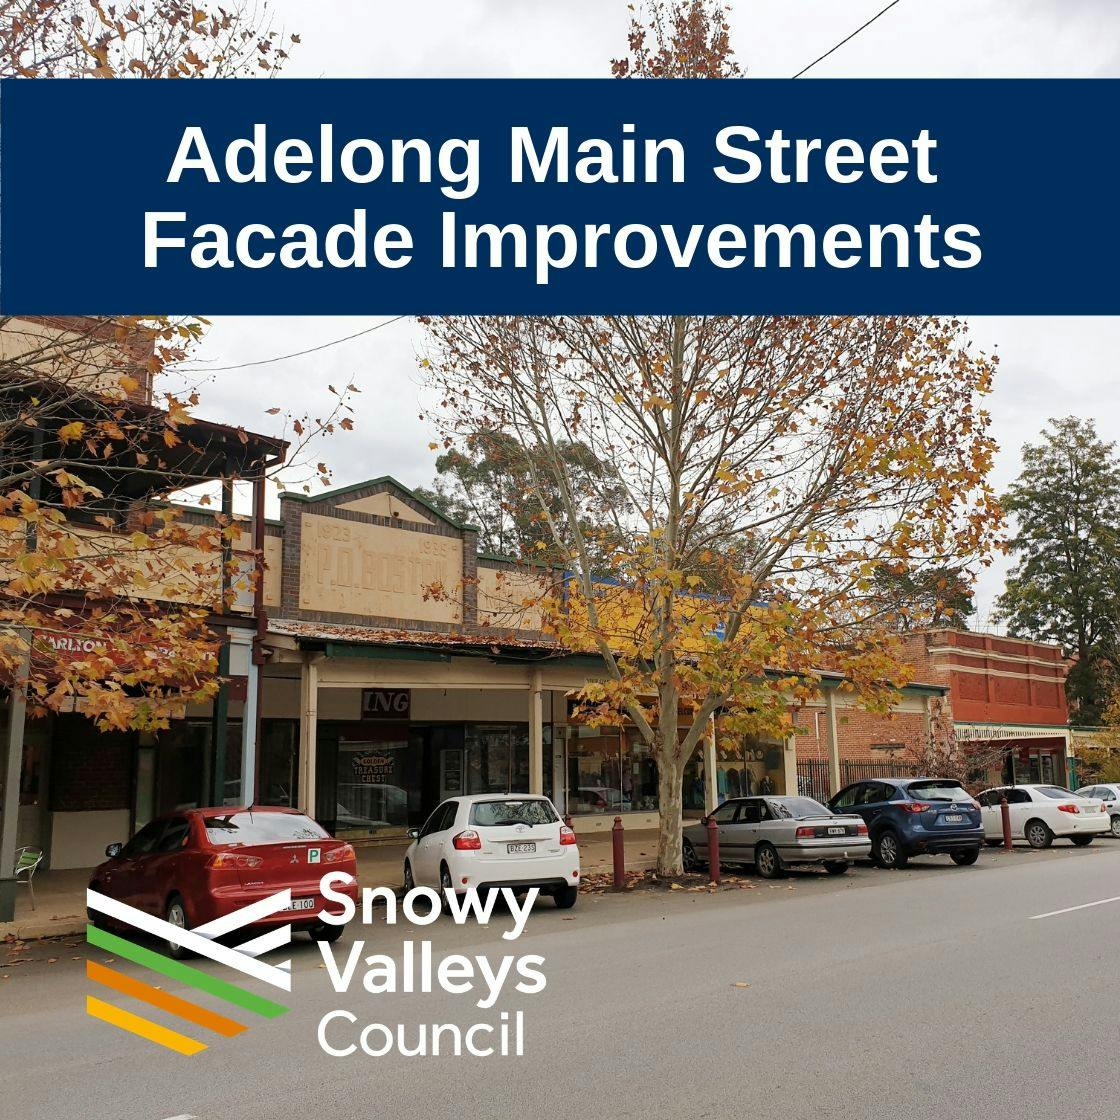 Adelong Main Street Facade Improvements